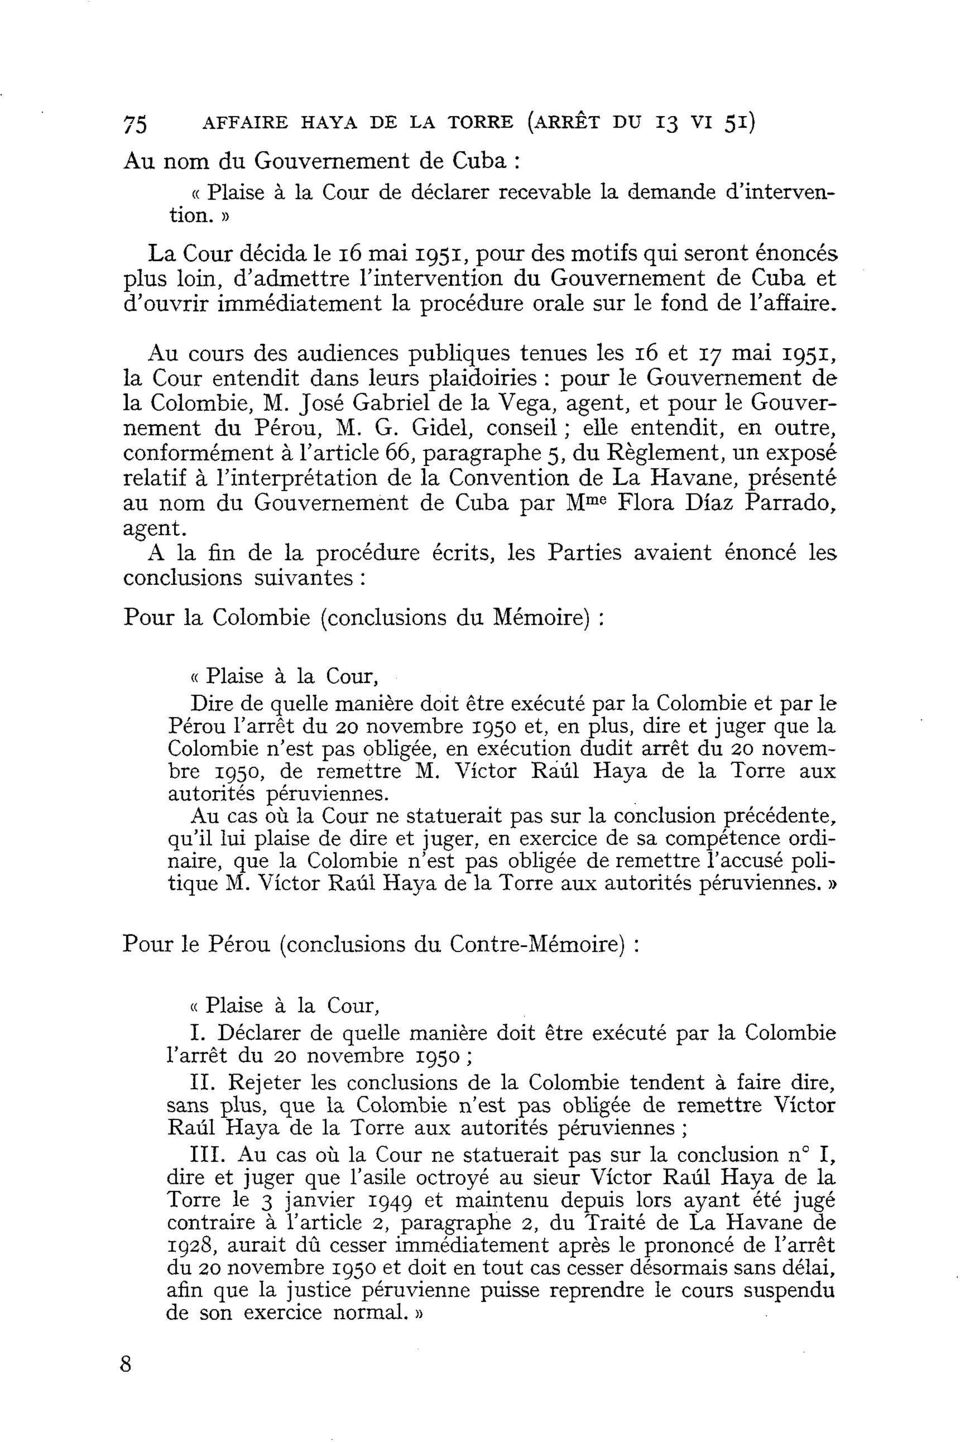 Au cours des audiences publiques tenues les 16 et 17 mai 1951, la Cour entendit dans leurs plaidoiries : pour le Gouvernement de la Colombie, M.